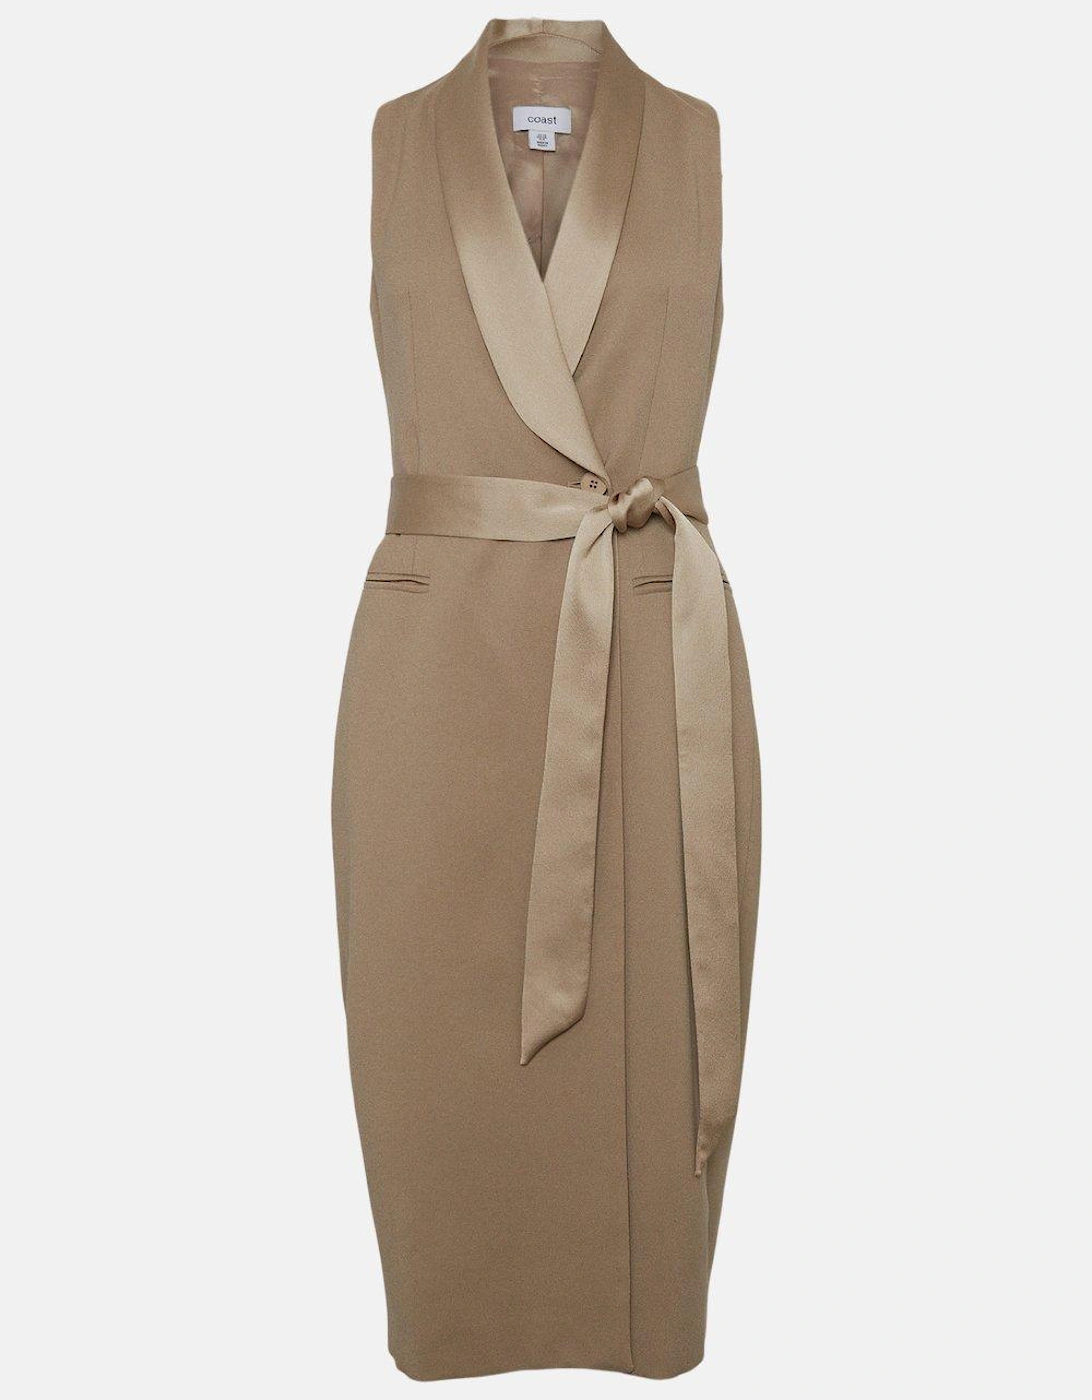 Premium Sleeveless Tuxe Wrap Midi Dress